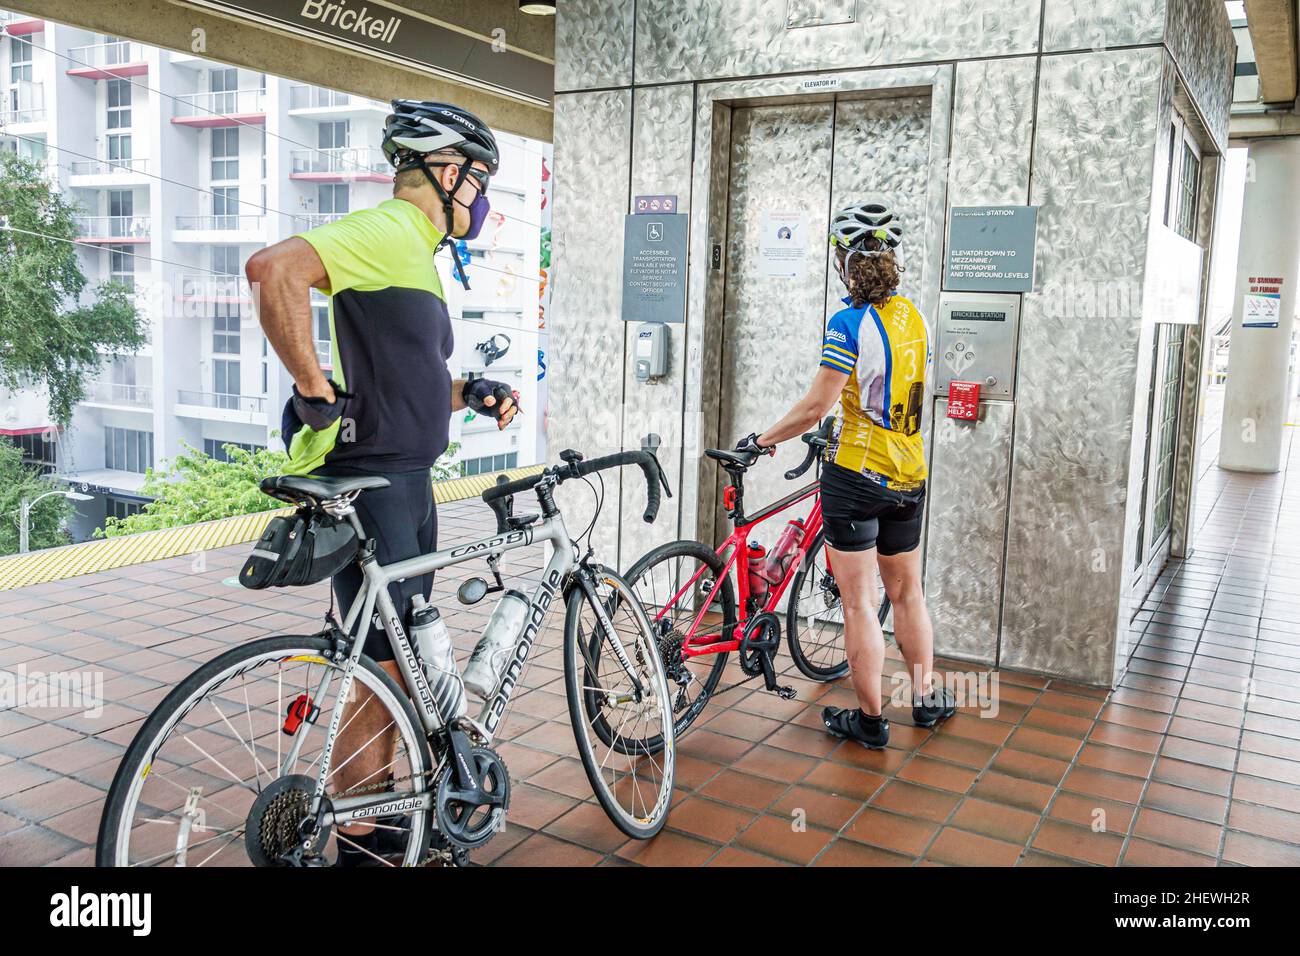 Miami Florida Brickell Metrorail train Station transport en commun plate-forme de transport ferroviaire homme femme couple motards cyclistes vélos attendant ascenseur Banque D'Images